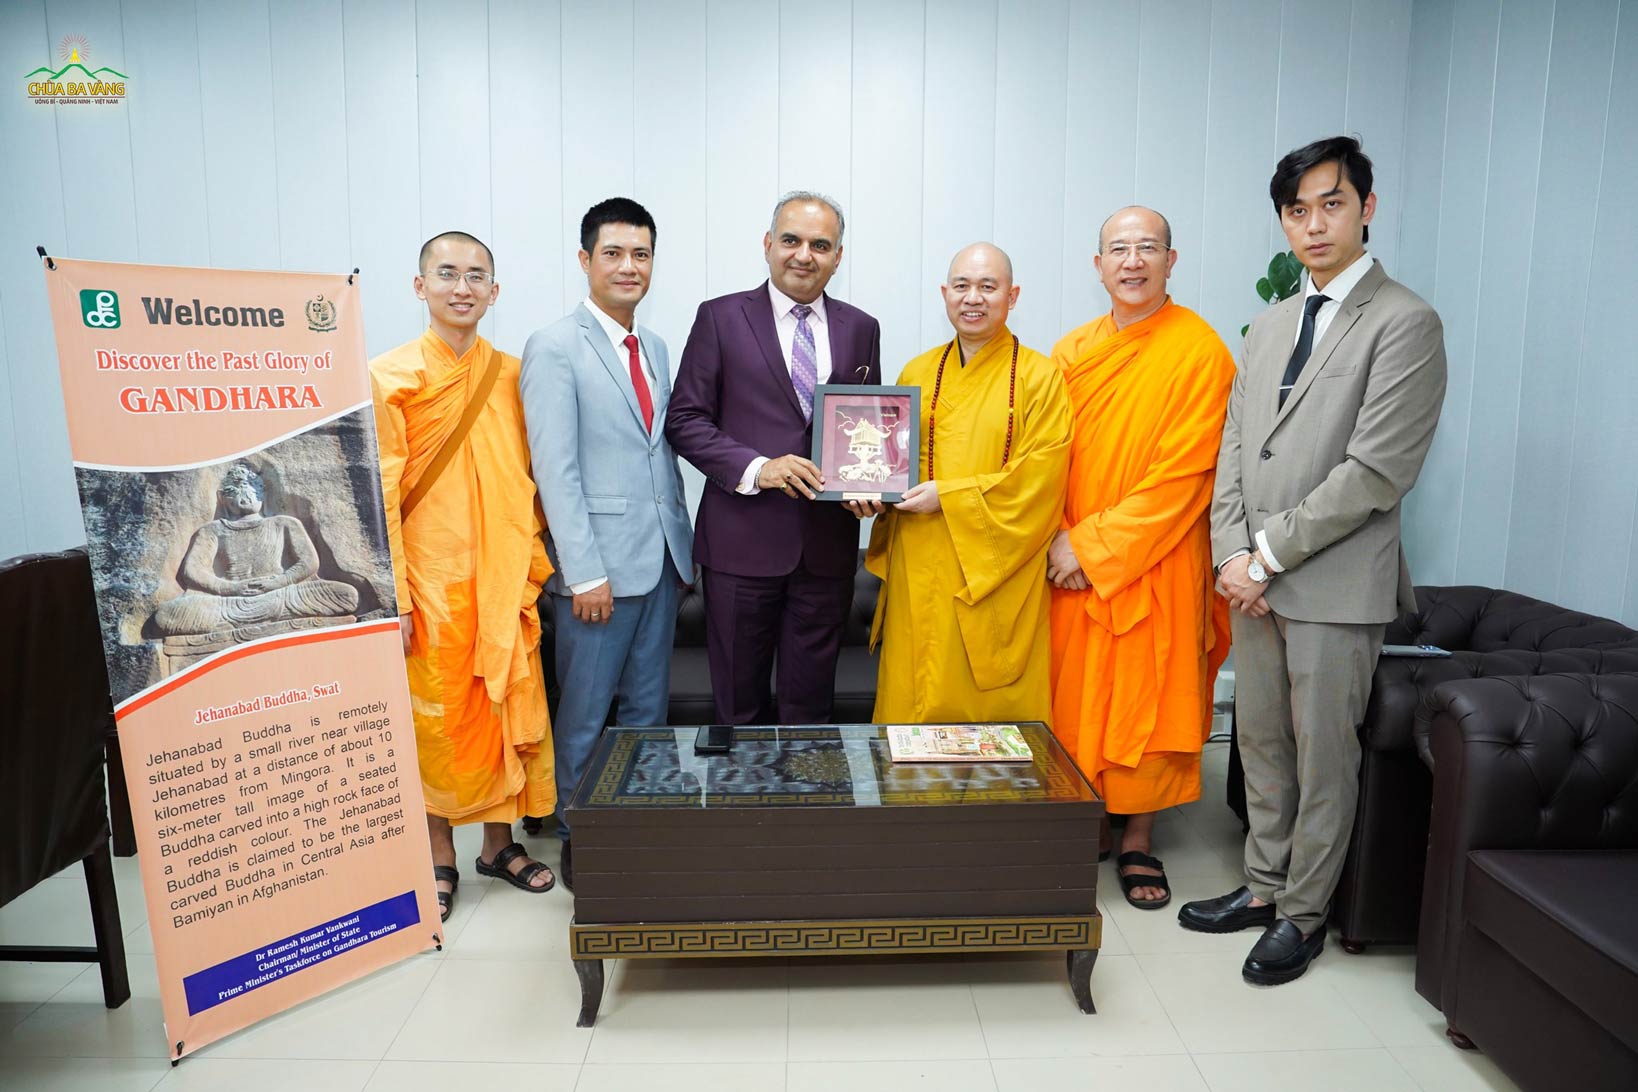 Quốc vụ khanh Ramesh Kumar Vankwani trao tặng đoàn Giáo hội Phật giáo Việt Nam món quà lưu niệm